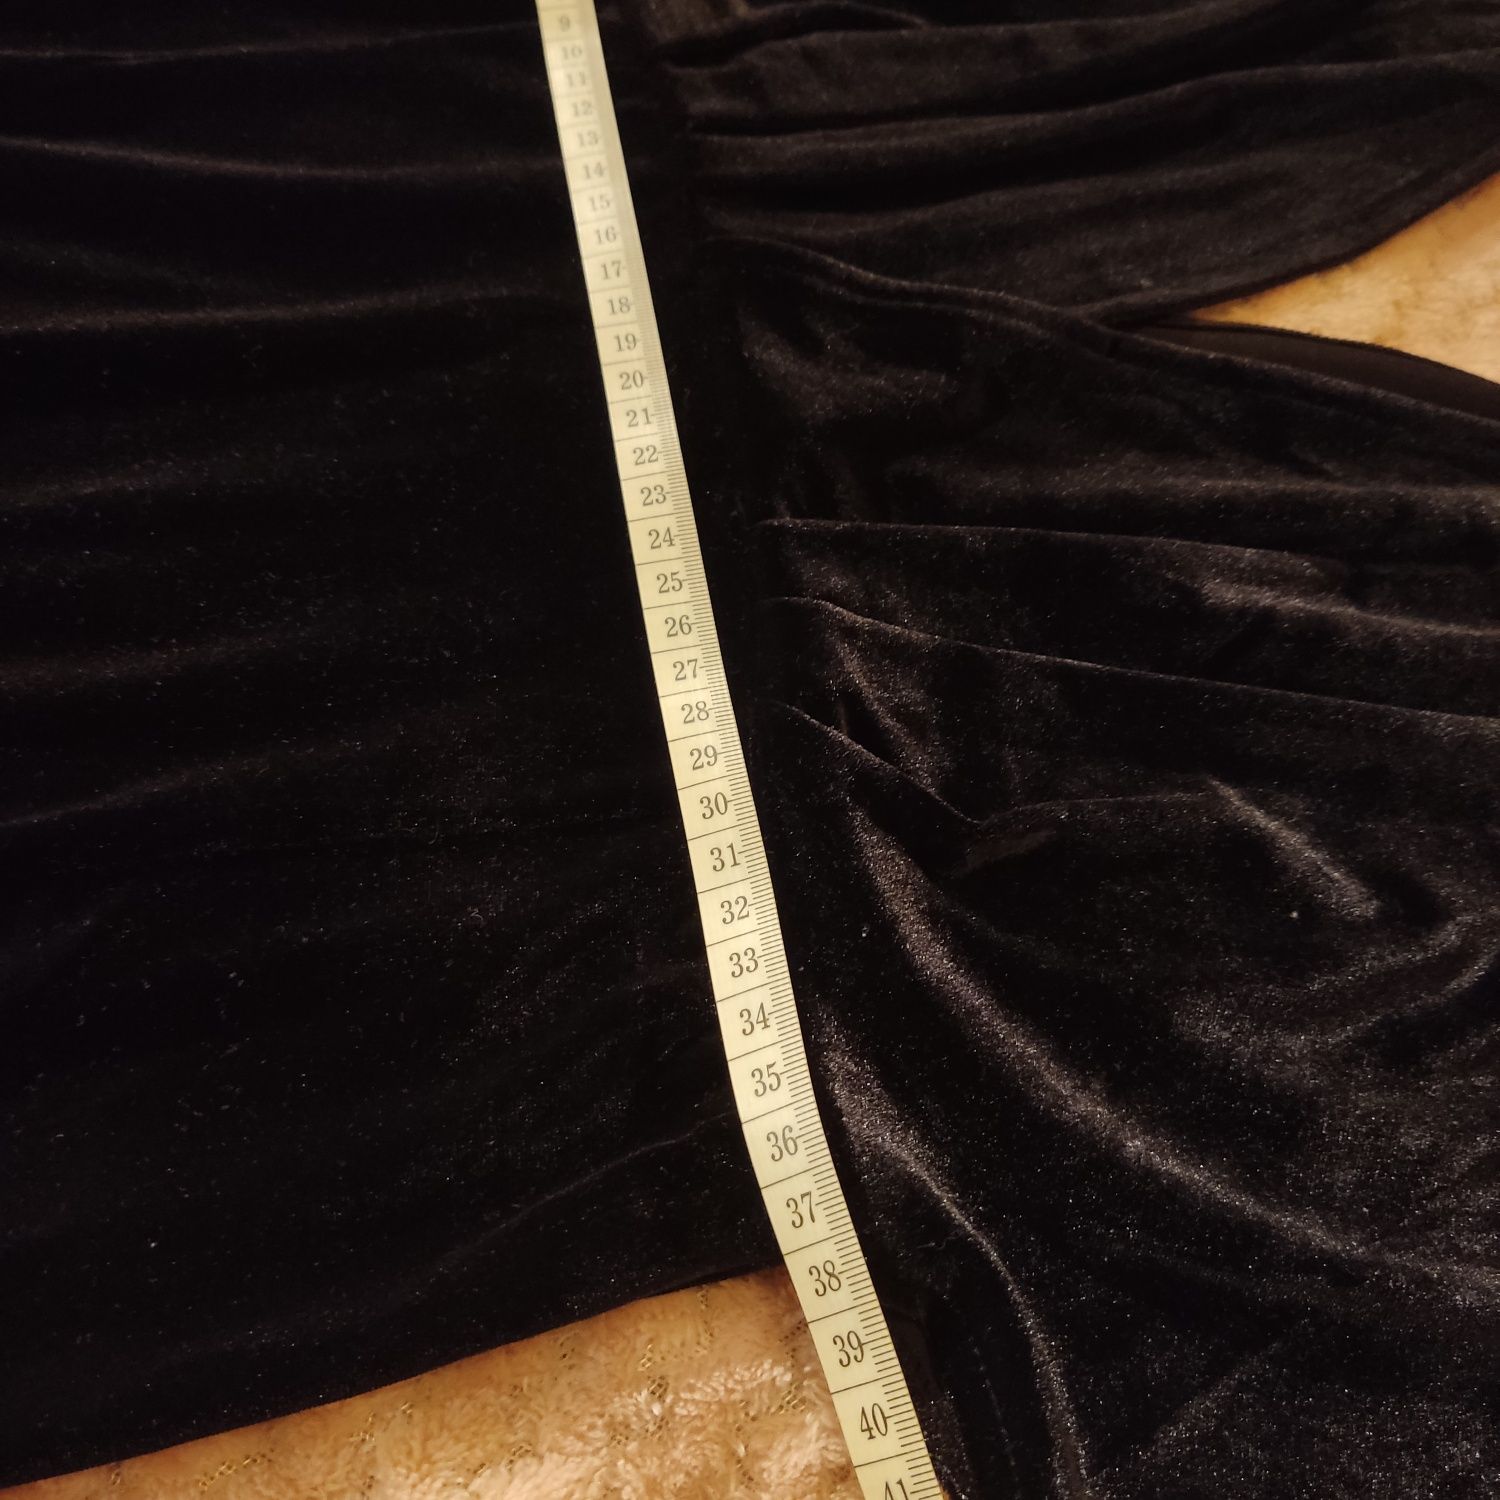 Czarna długa welurowa sukienka nietoperz H&M roz S wymiary patrz opis